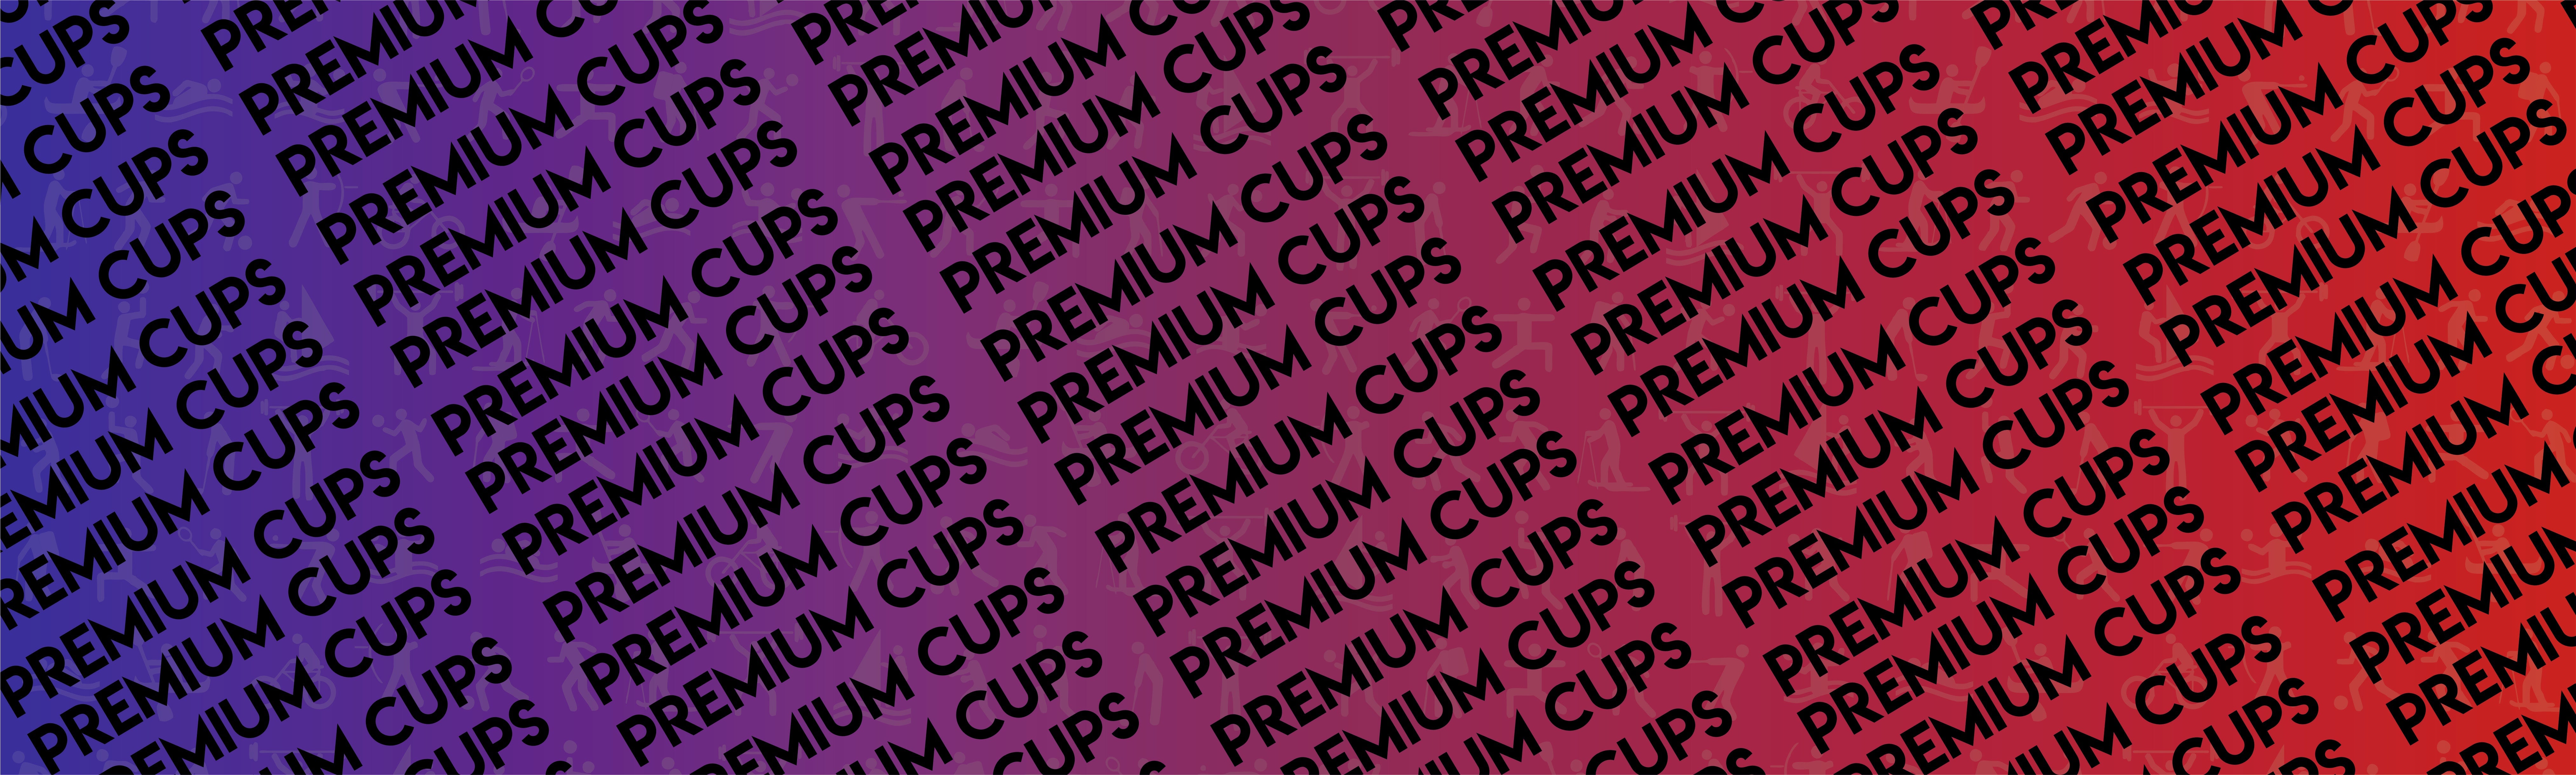 Premium Cups